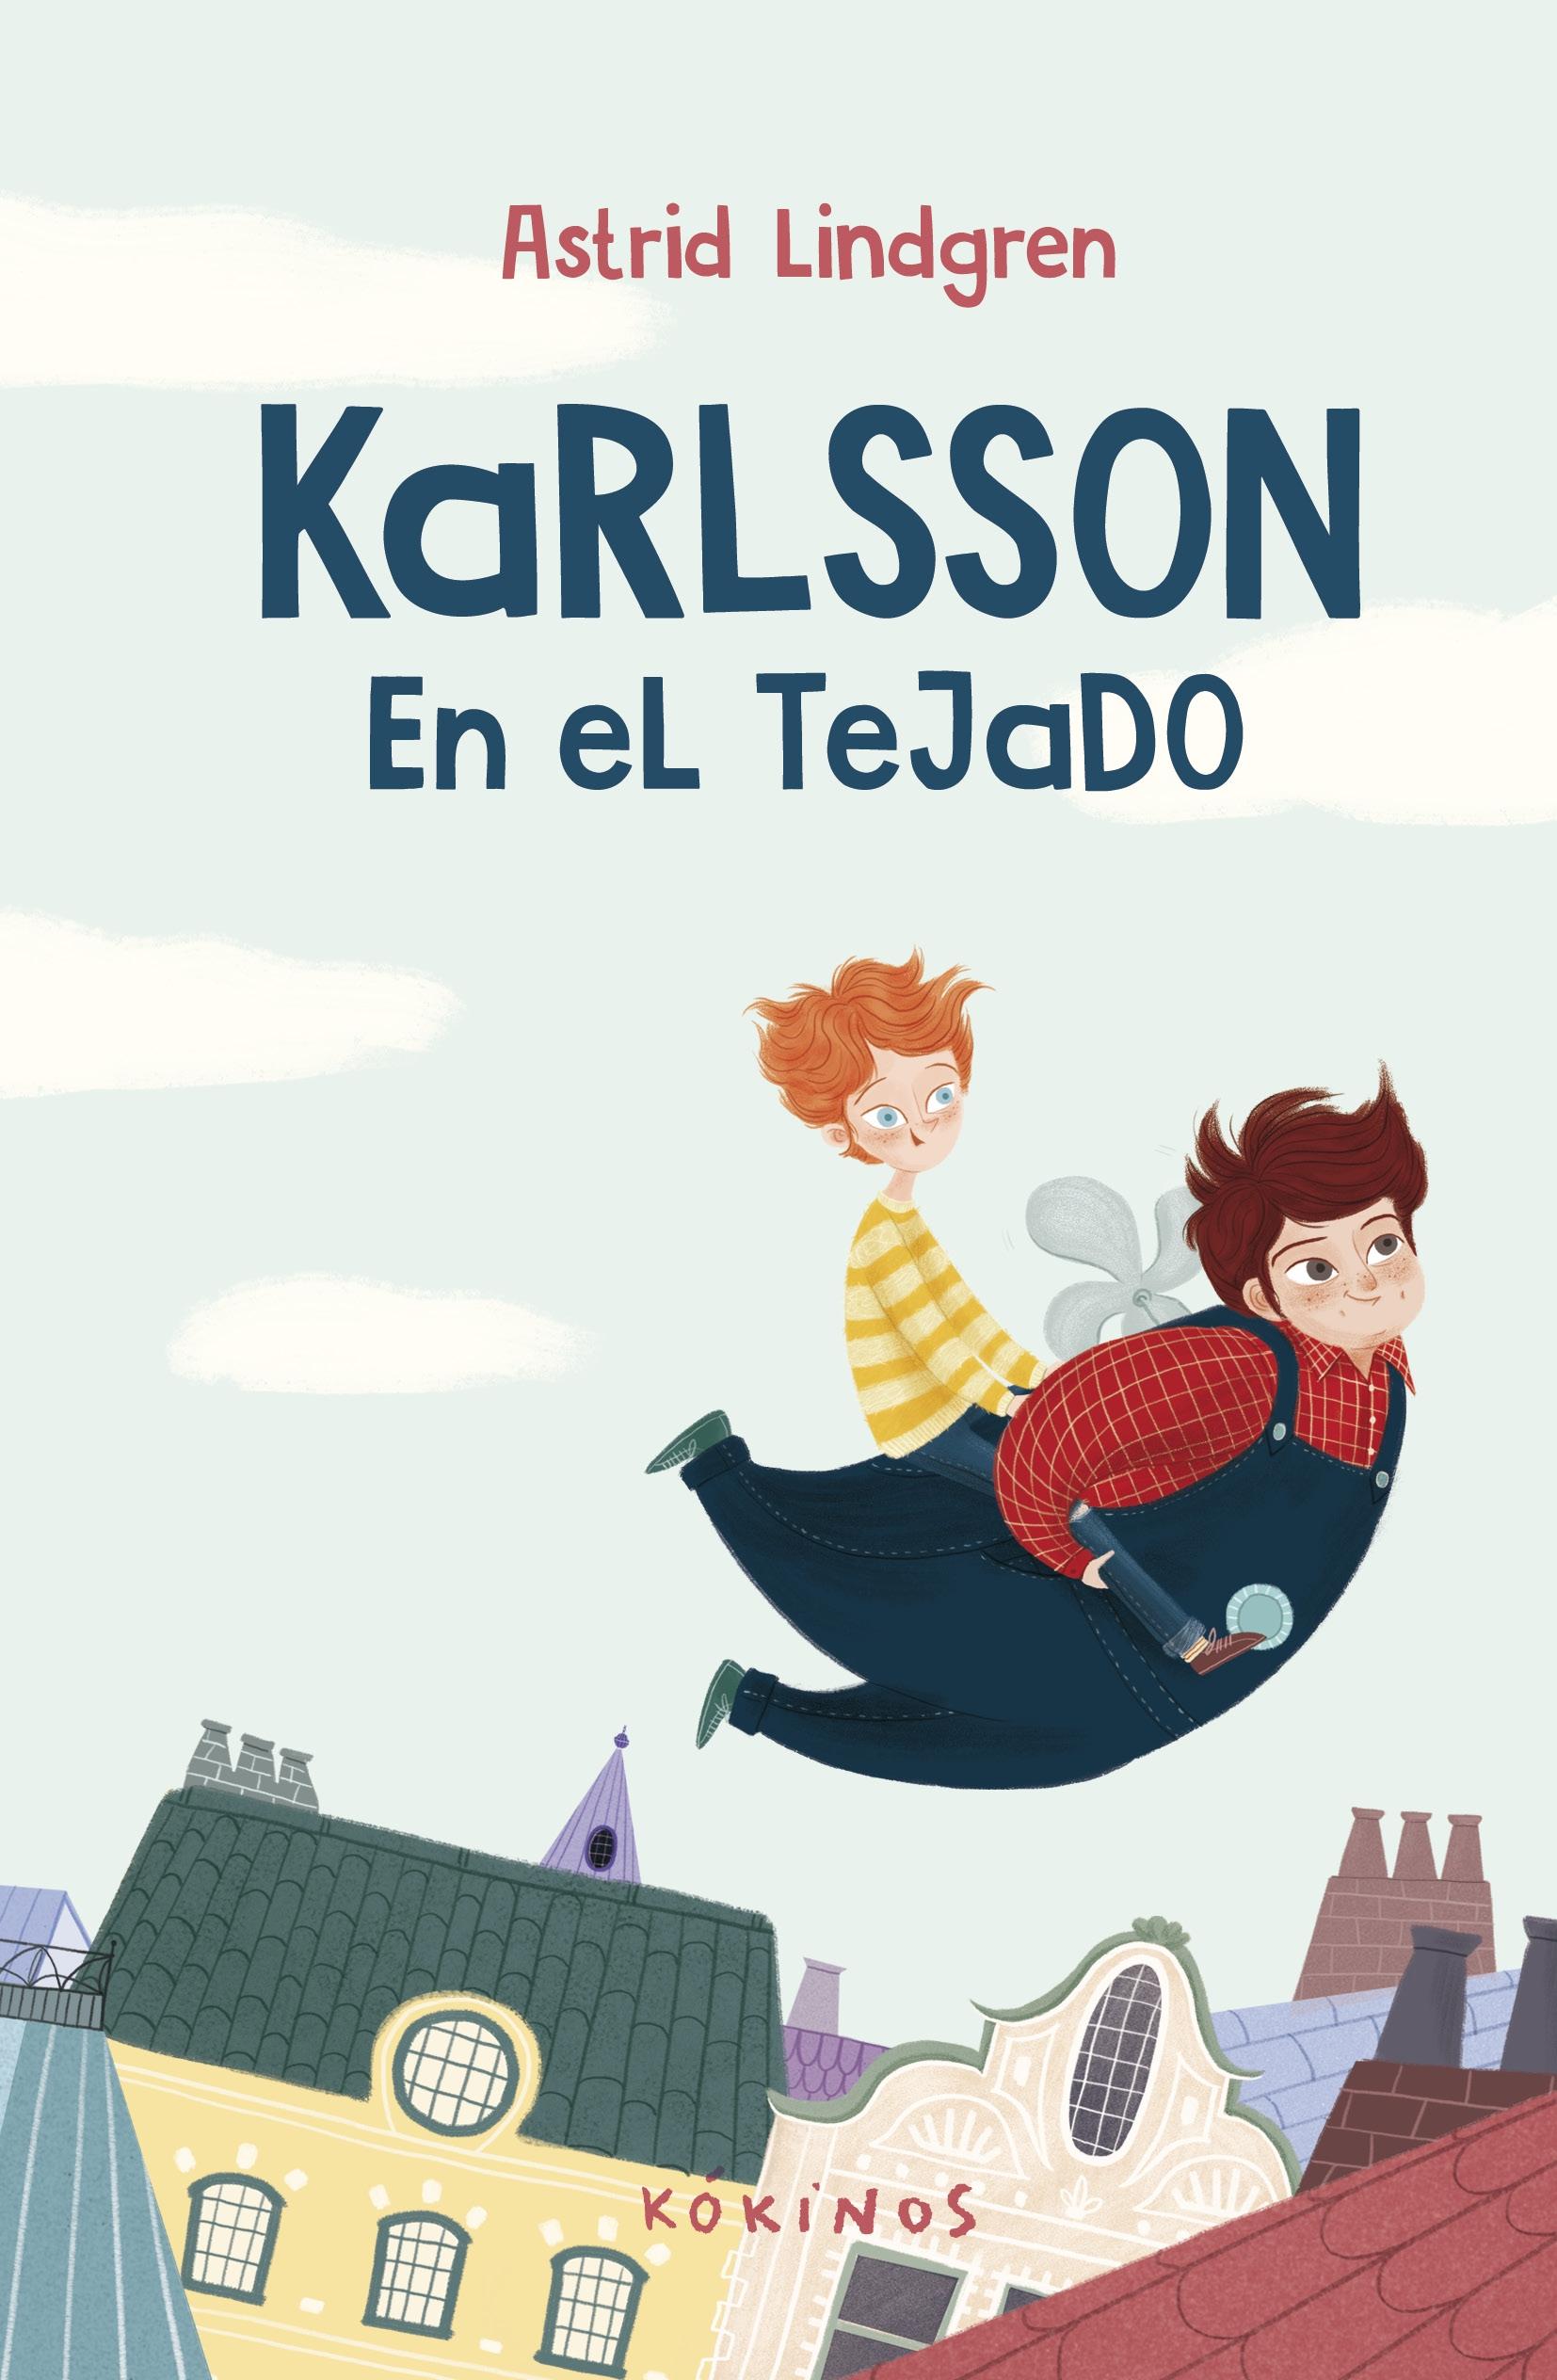 Karlsson "En el Tejado". 